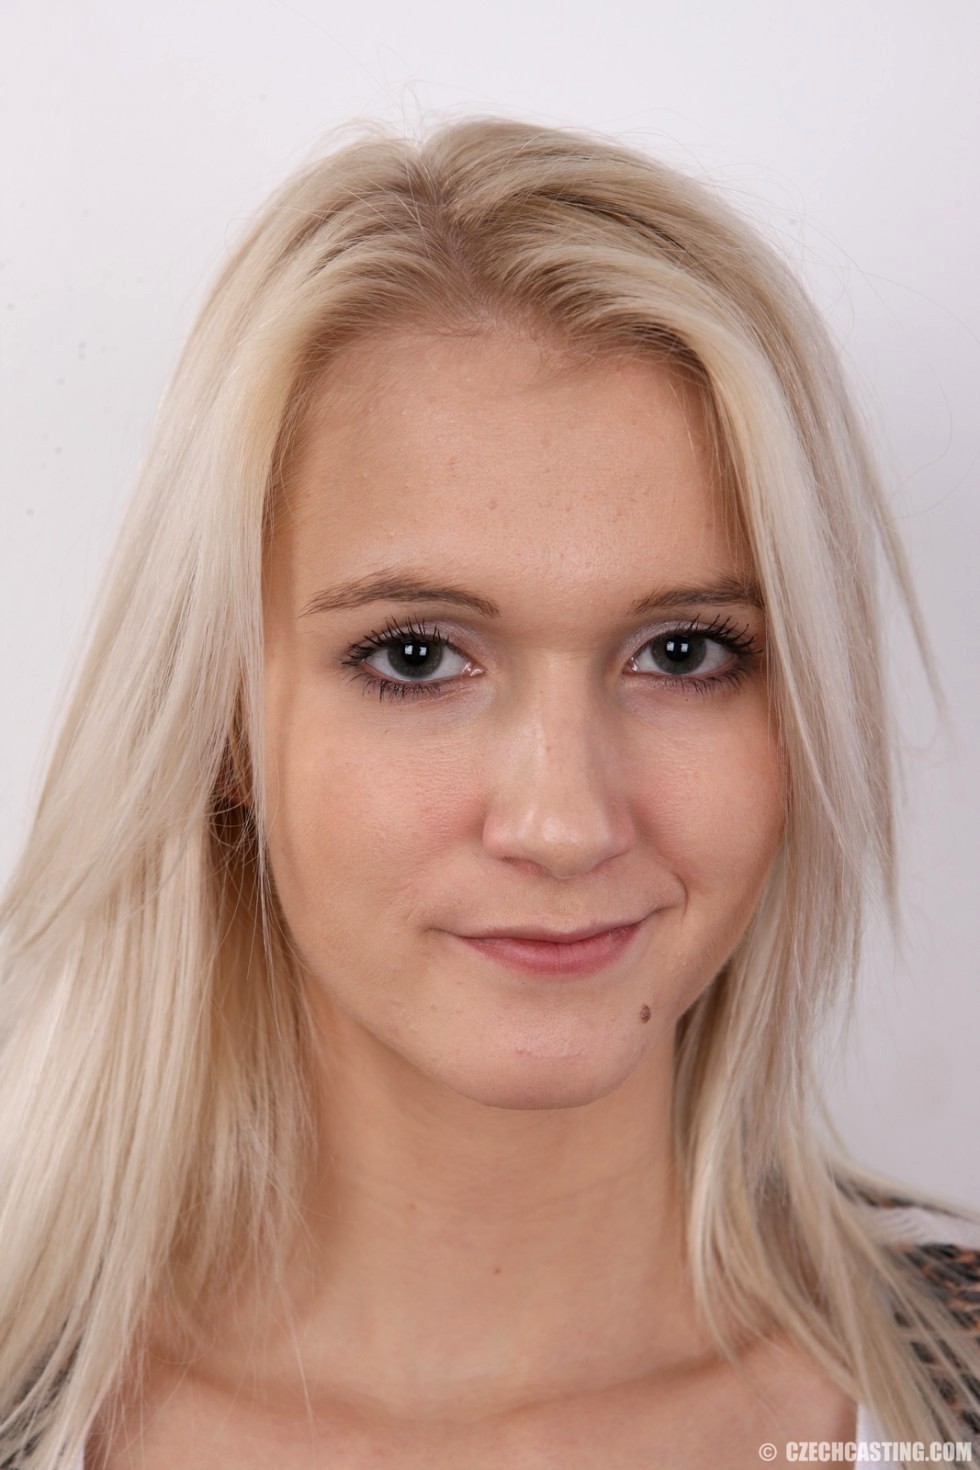 Czech casting schoolgirl